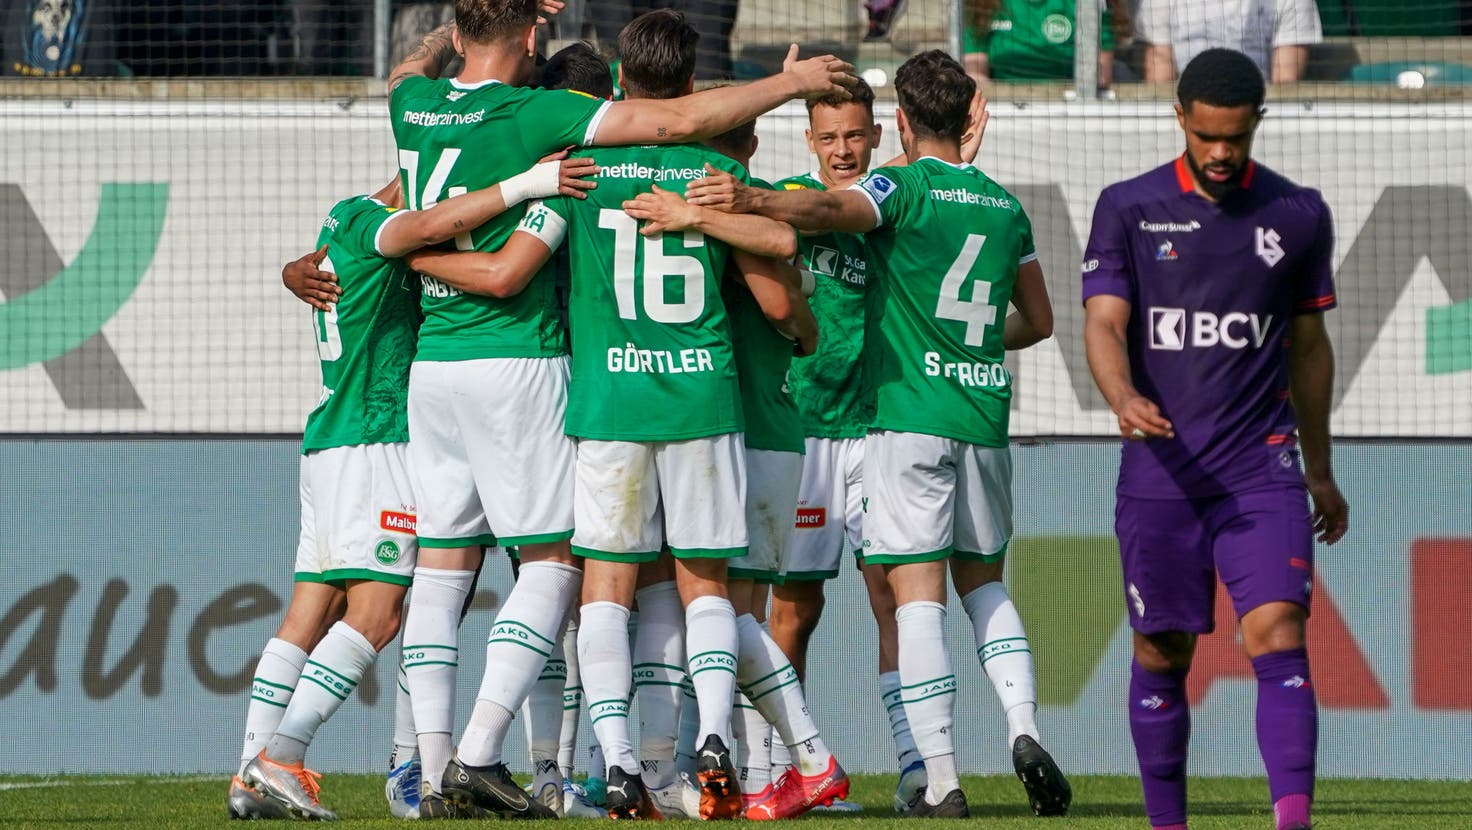 Saison-Dernière im proppenvollen Kybunpark: Doppelpack von Duah, dann trifft auch Görtler für St.Gallen zum 3:0 gegen Lausanne